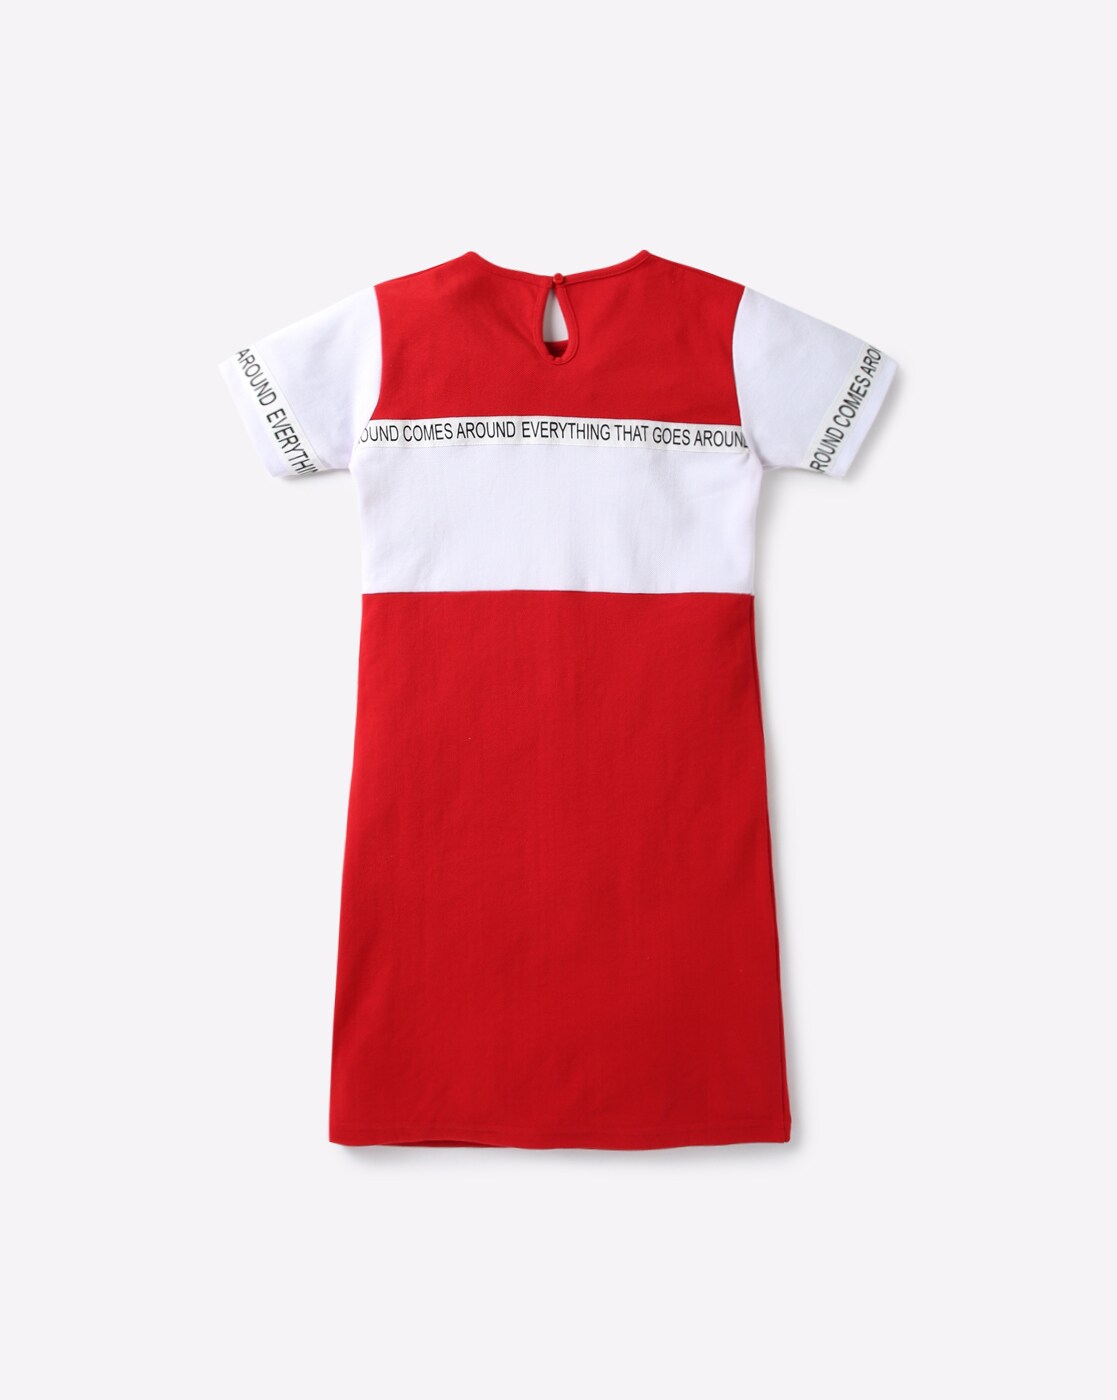 ajio red dress